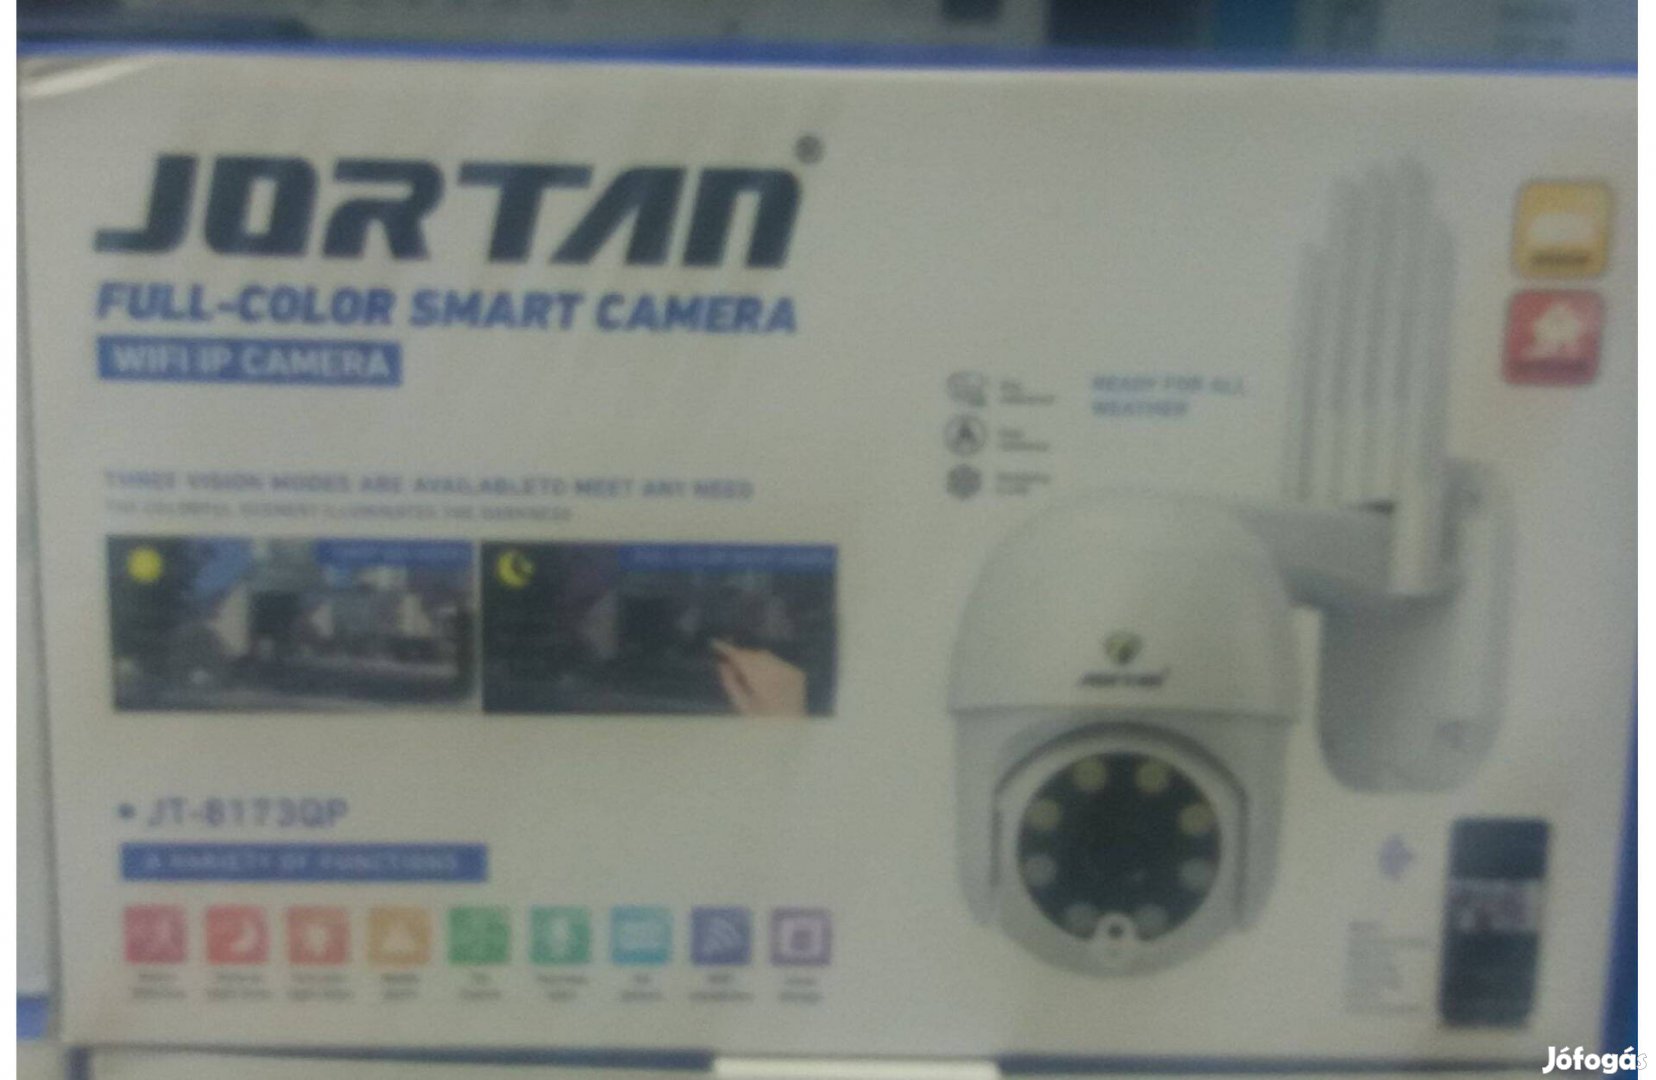 Új Jortan IPC360 Kamera, távolról vezérelhető, wifis, univerzális